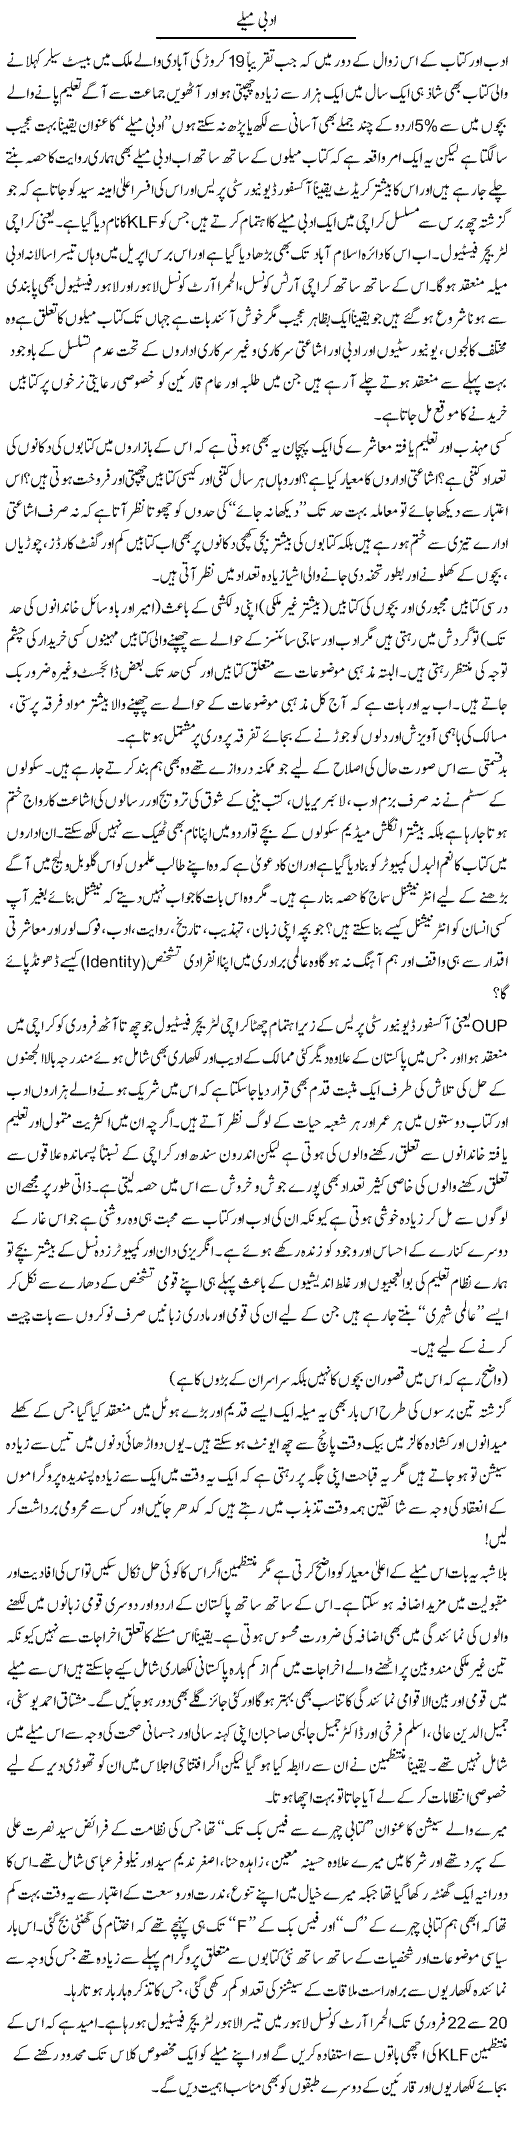 Adbi Melay | Amjad Islam Amjad | Daily Urdu Columns